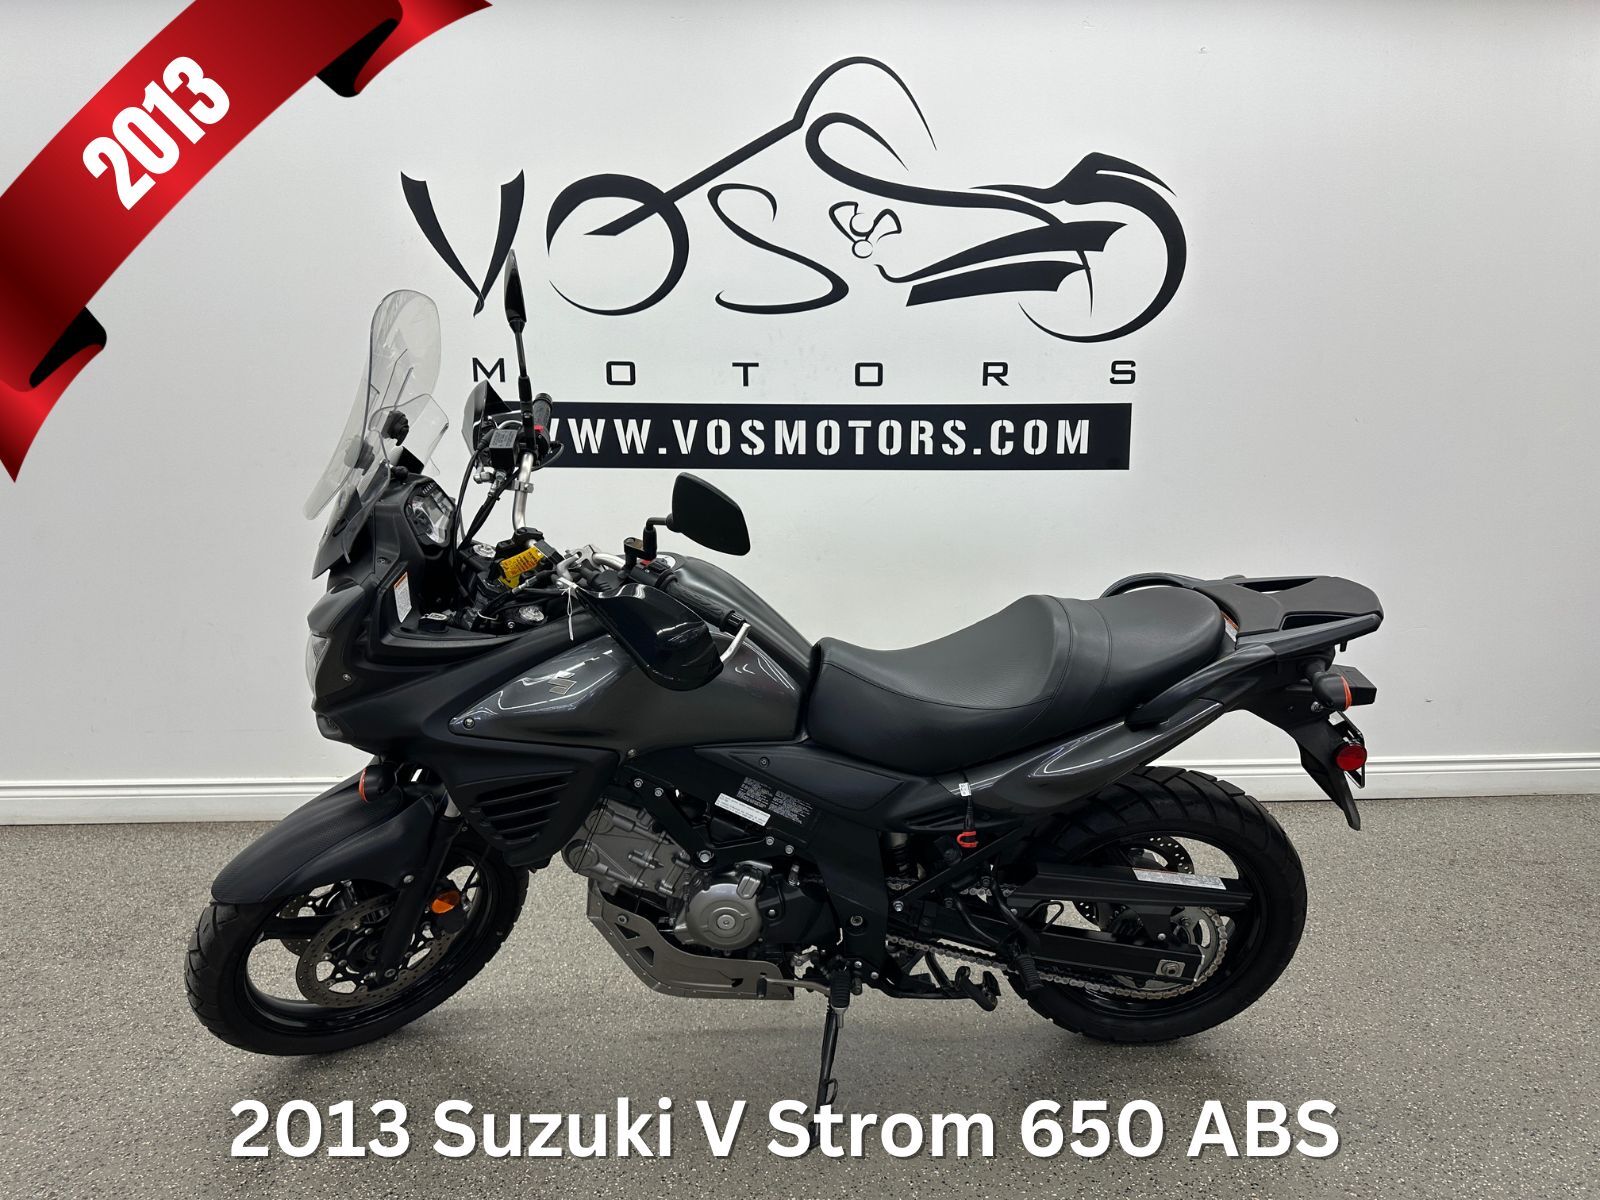 2013 Suzuki V Strom 650 ABS Super motard - V5943NP - -No Payments for 1 Year**